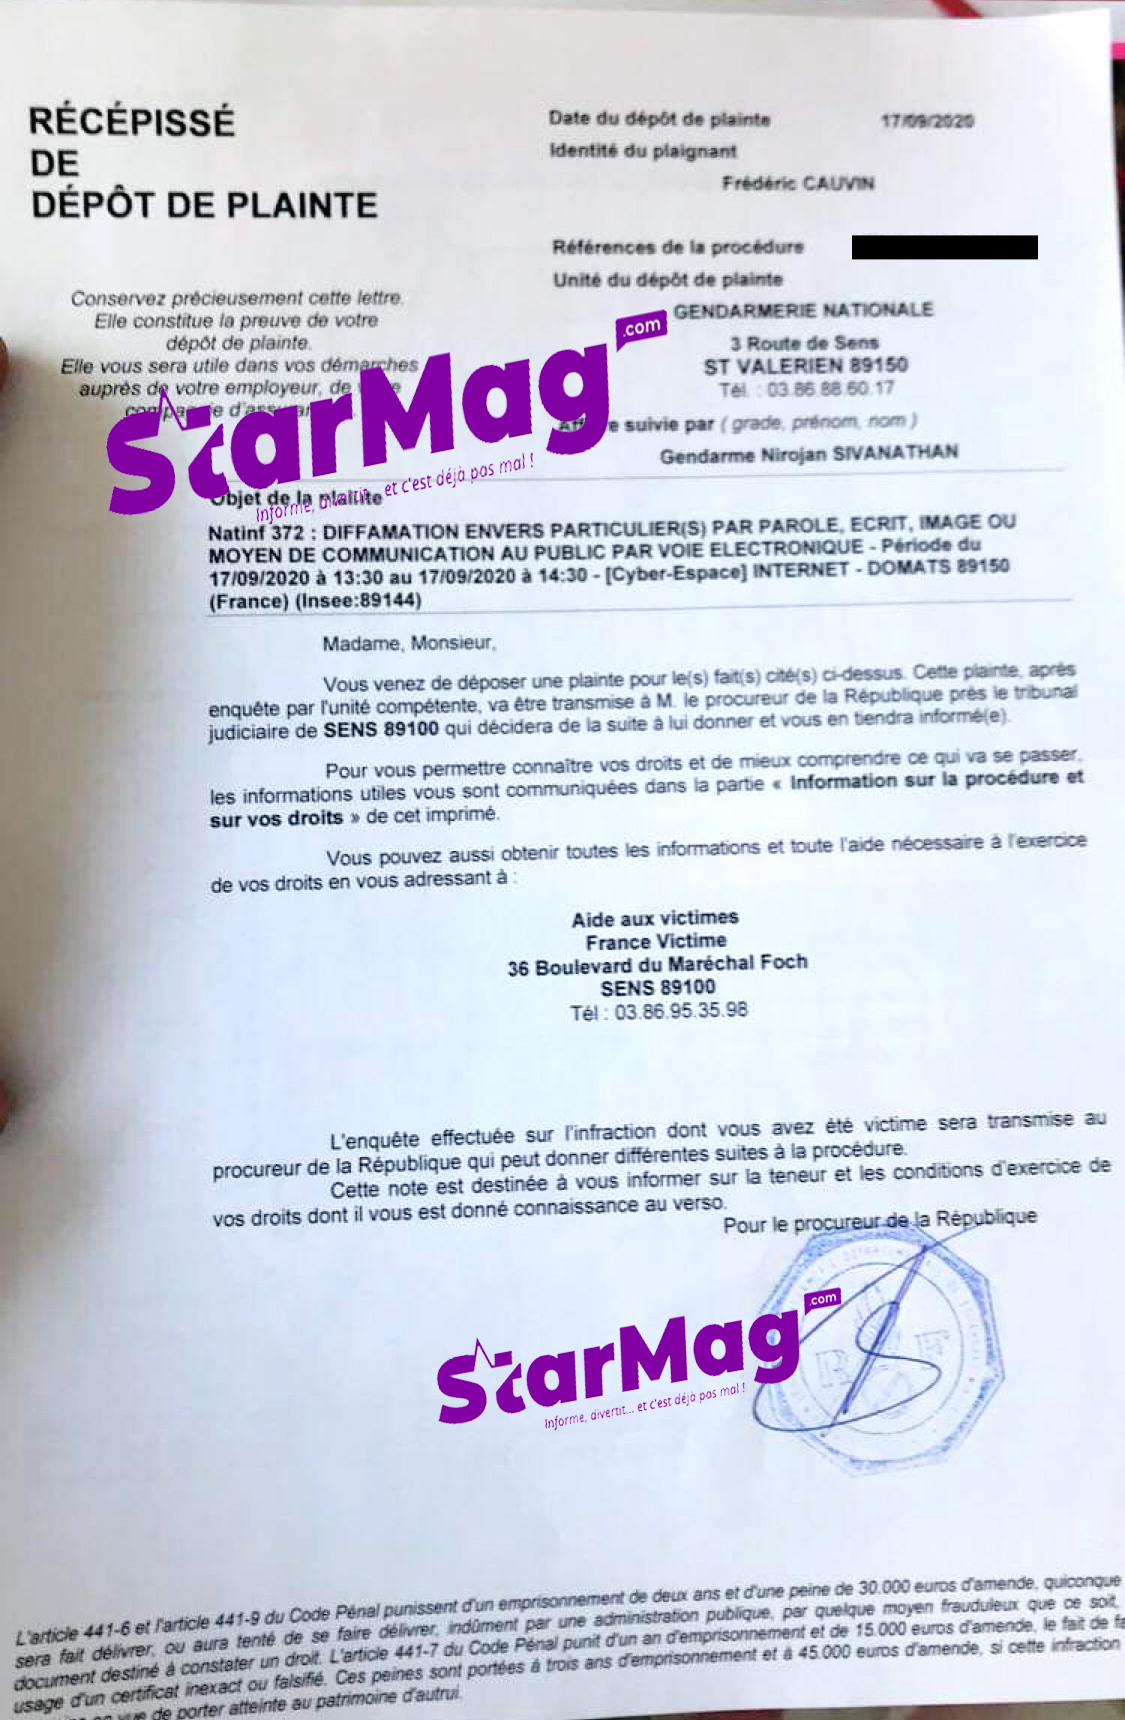 StarMag.com